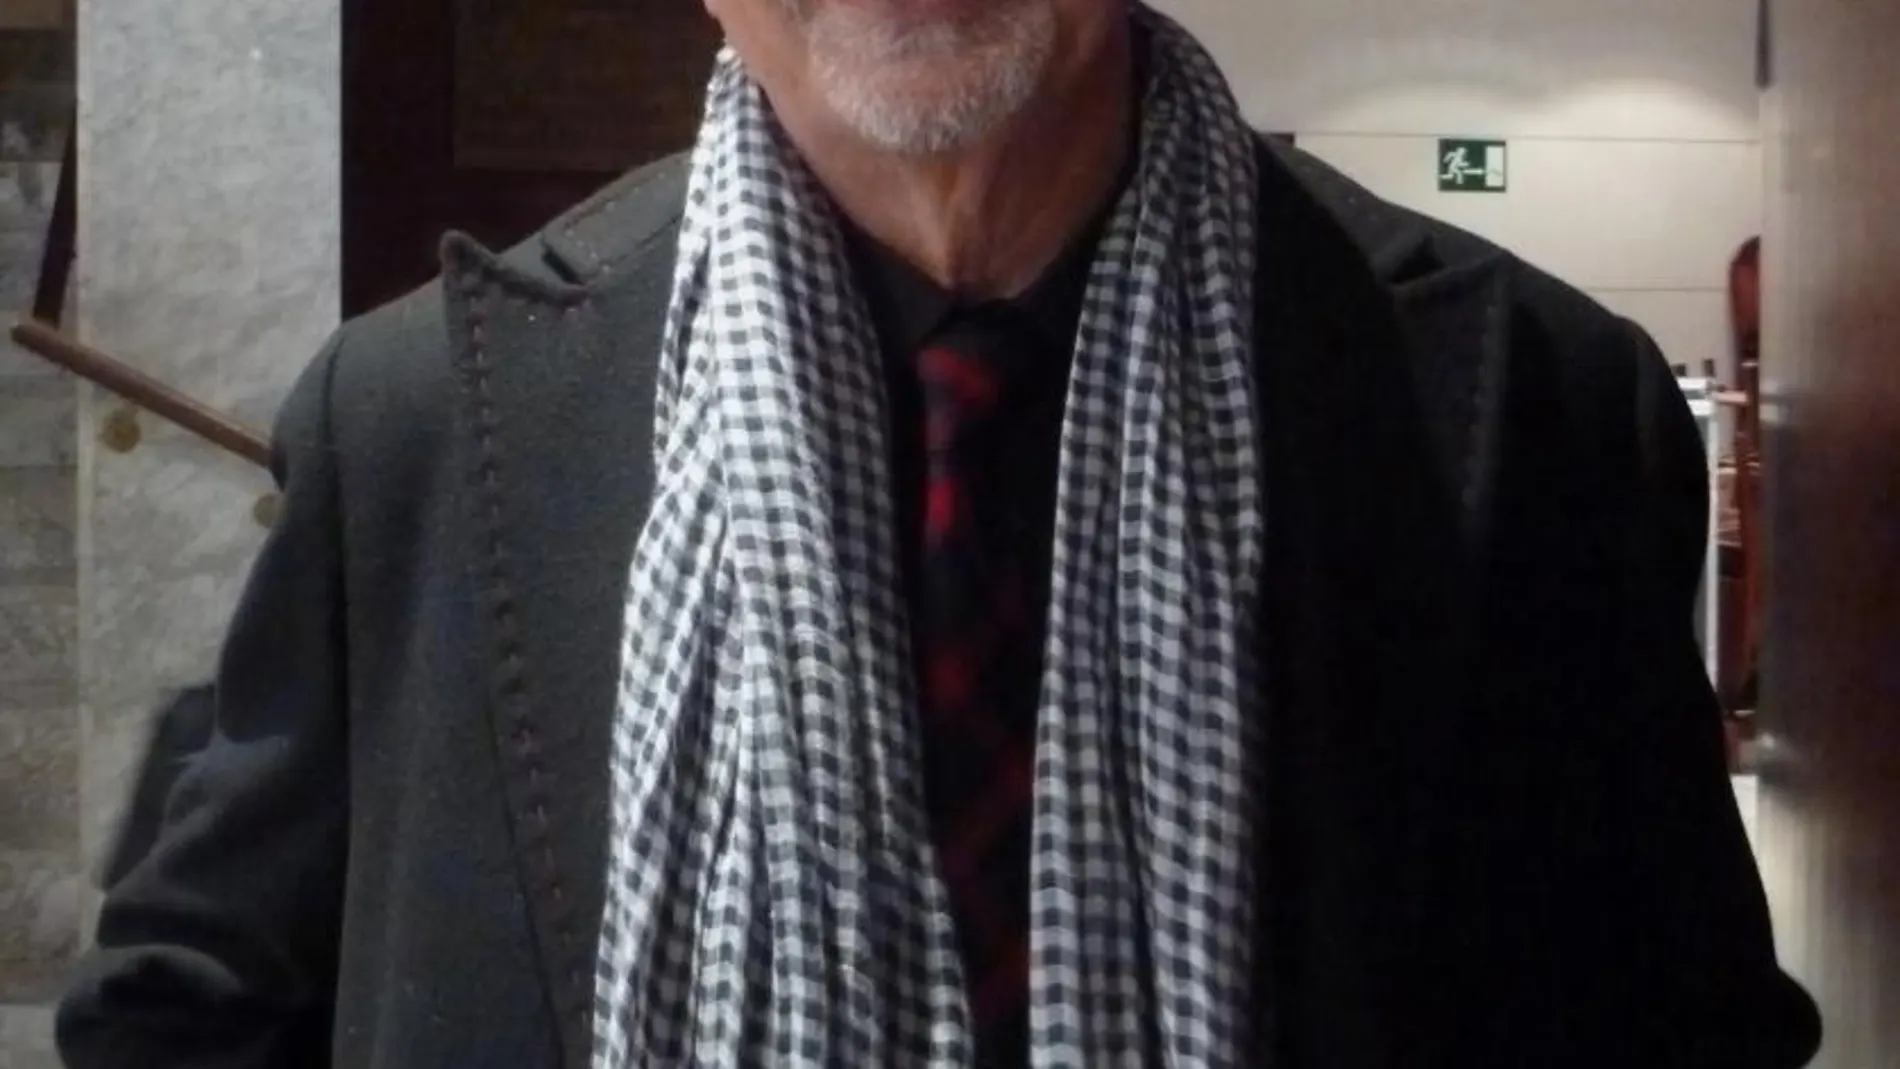 Ernesto Chao, en una imagen de archivo / Foto De Elisardojm CC BY-SA 3.0, https://commons.wikimedia.org/w/index.php?curid=32447409